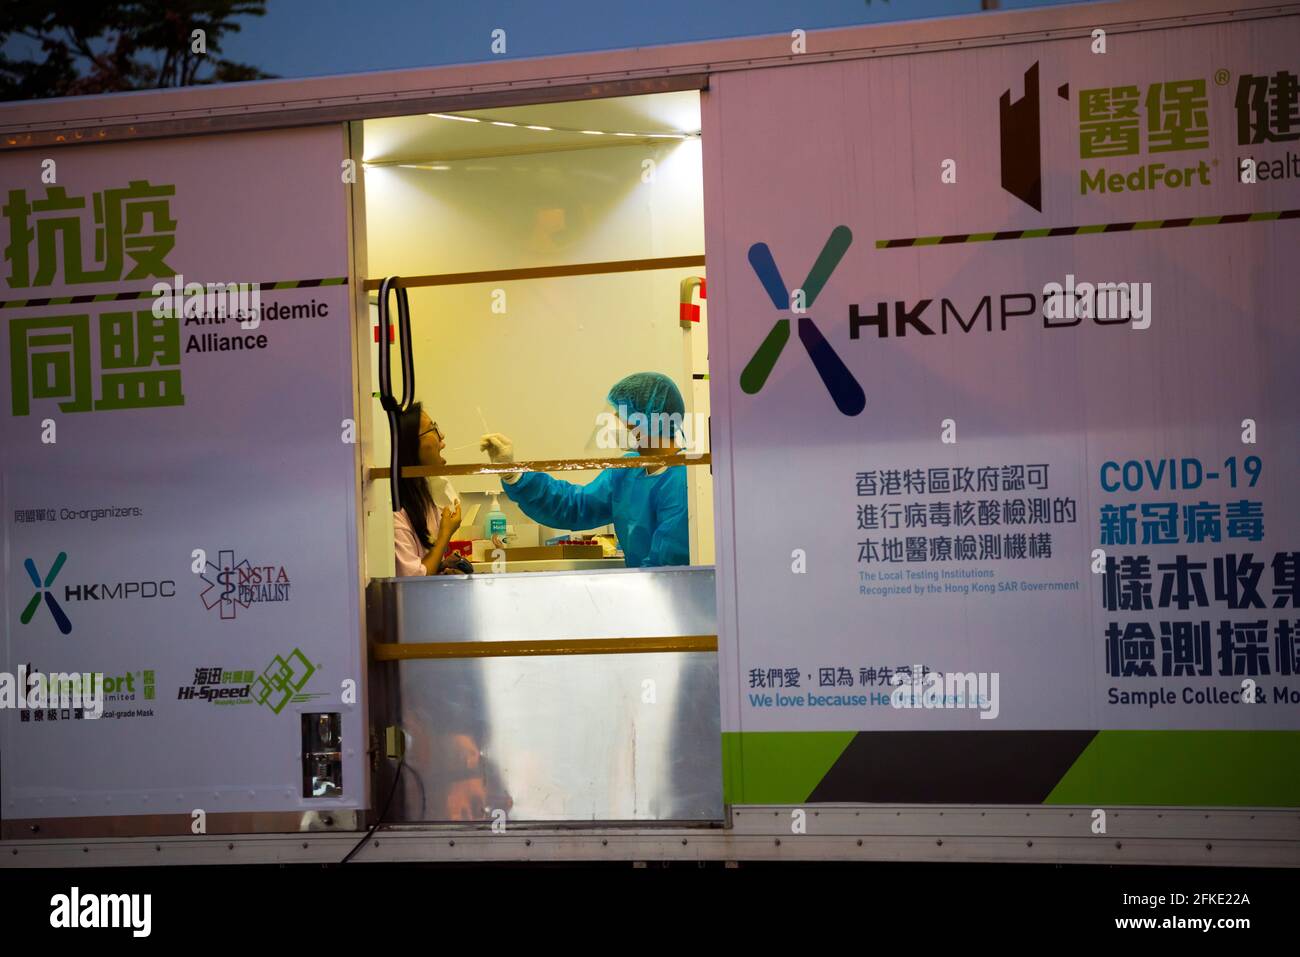 Mobile Testfahrzeuge in Hongkong, die den Bewohnern kostenlose Covid-19-Testdienste bieten. Stockfoto